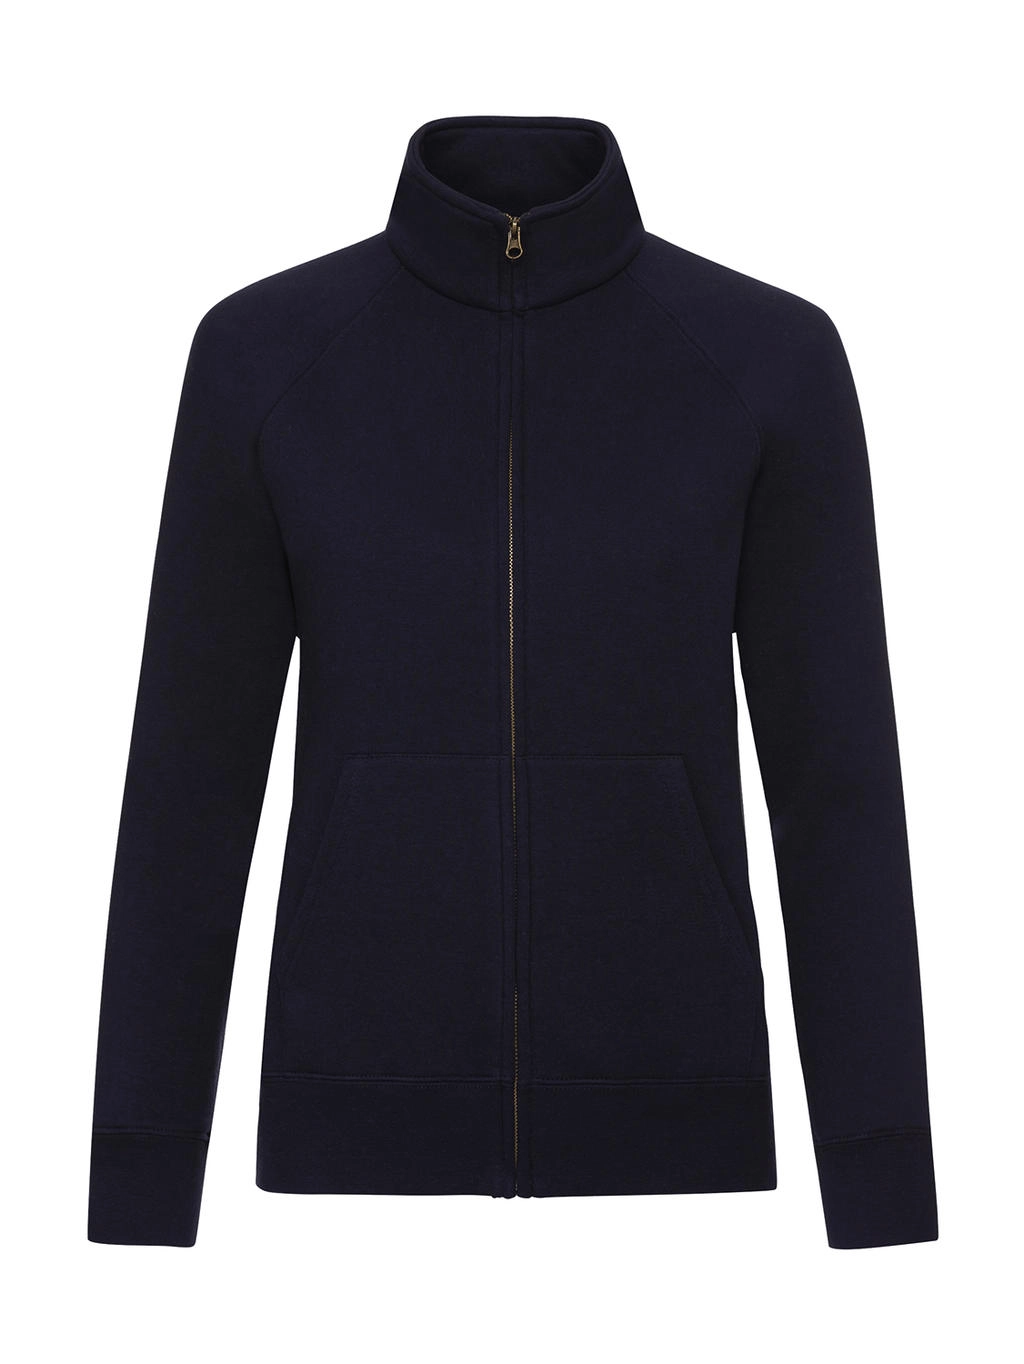 Ladies` Premium Sweat Jacket zum Besticken und Bedrucken in der Farbe Deep Navy mit Ihren Logo, Schriftzug oder Motiv.